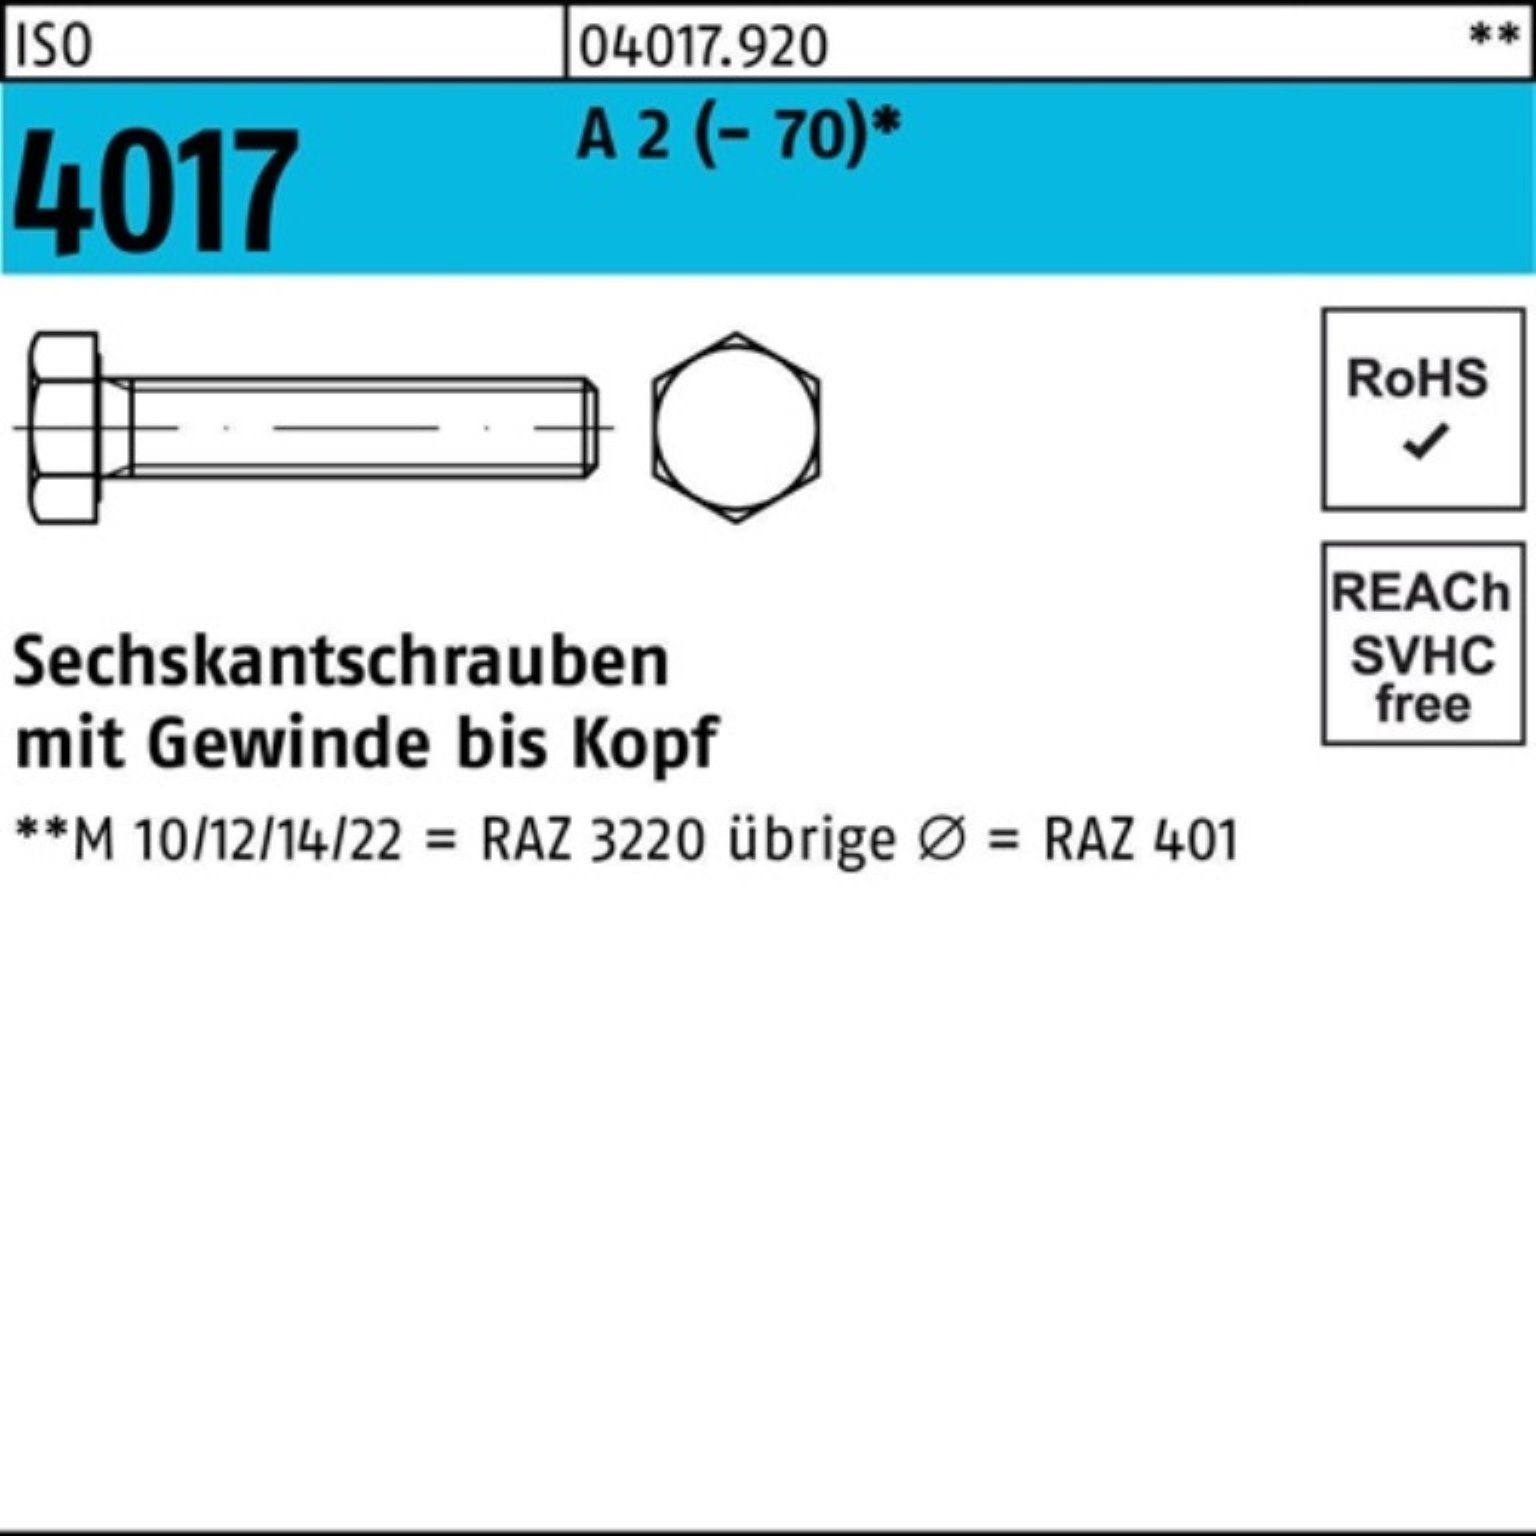 Bufab Sechskantschraube 100er Pack Sechskantschraube ISO 4017 VG M36x 80 A 2 (70) 1 Stück I